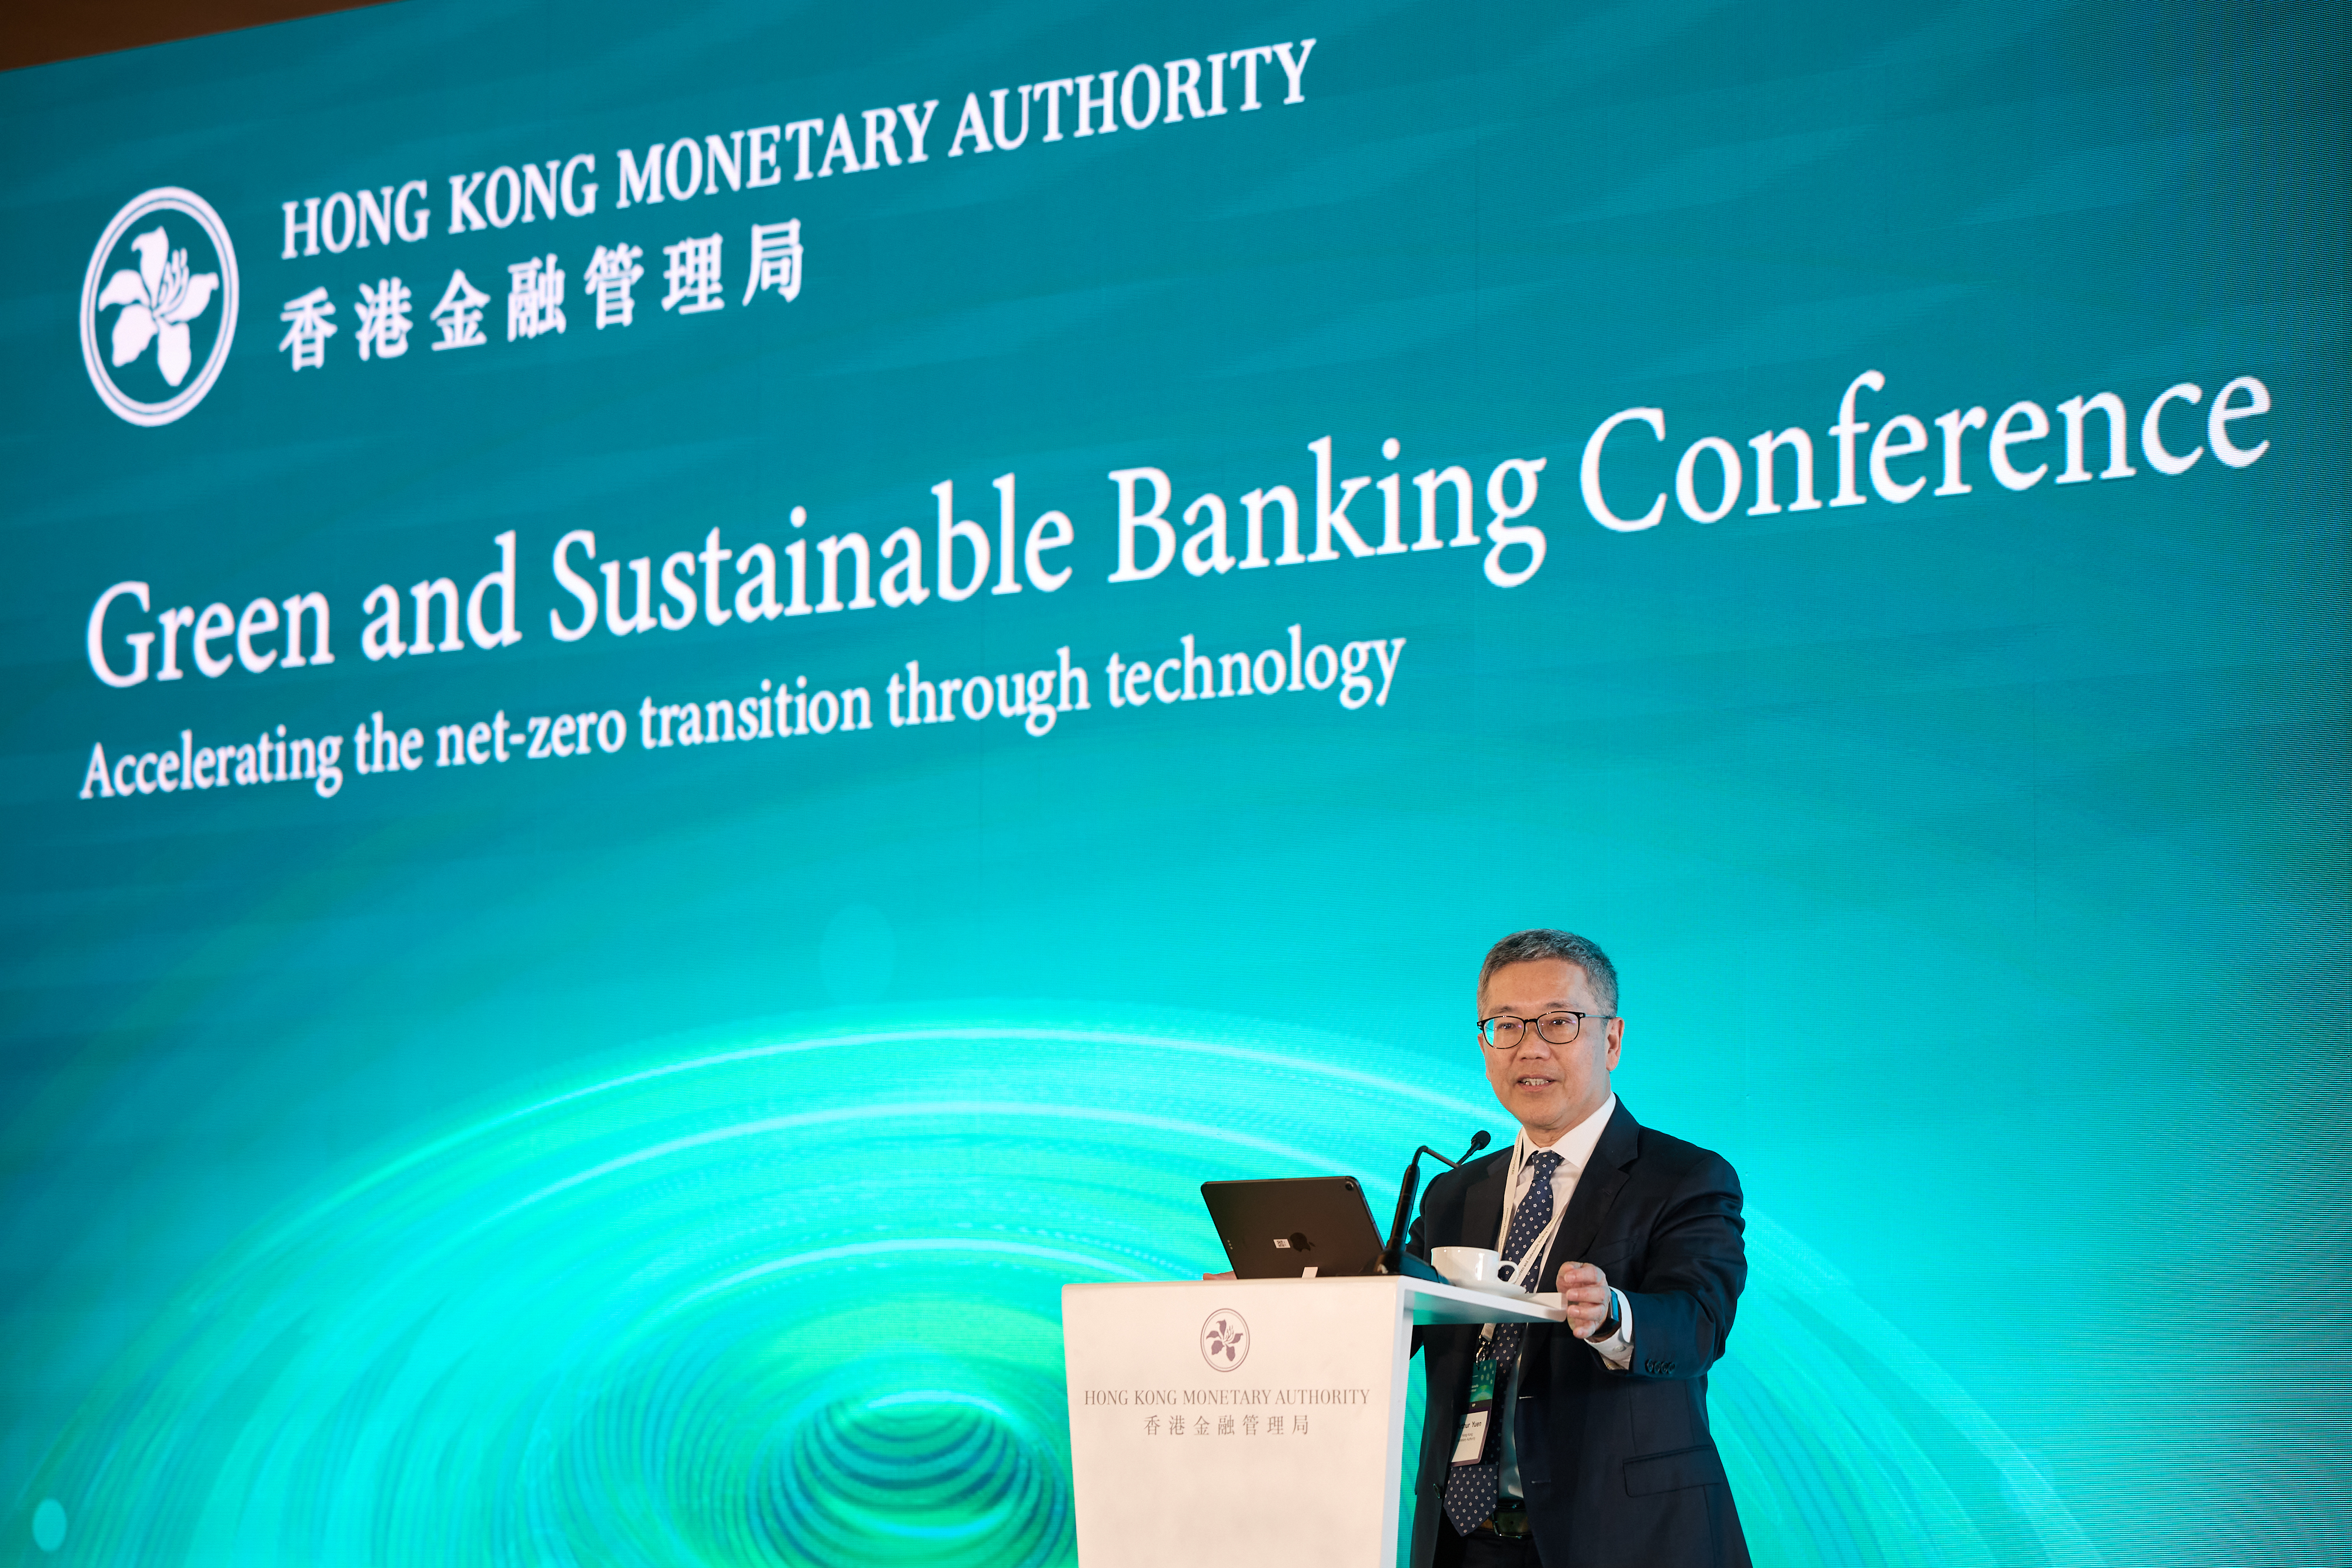 金管局副总裁阮国恒于「绿色及可持续银行研讨会」致开幕辞。